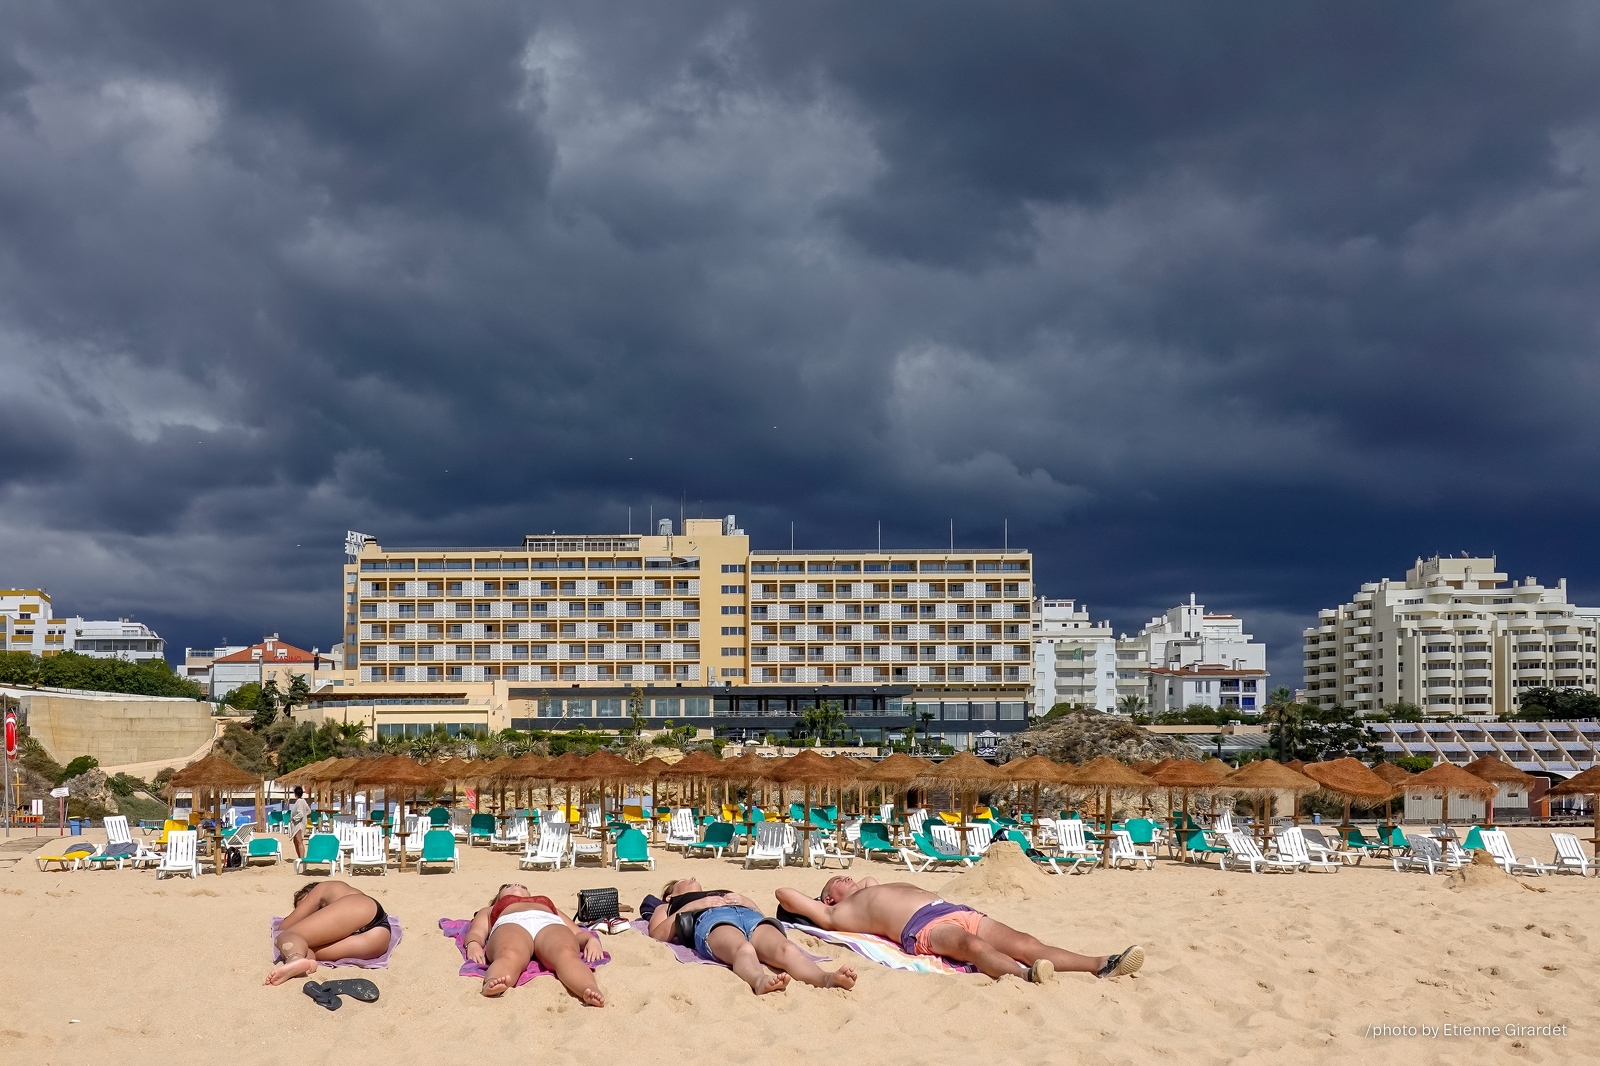 201810_20_RXX1761-sunbathing-people-dark-clouds-by-E-Girardet.jpg